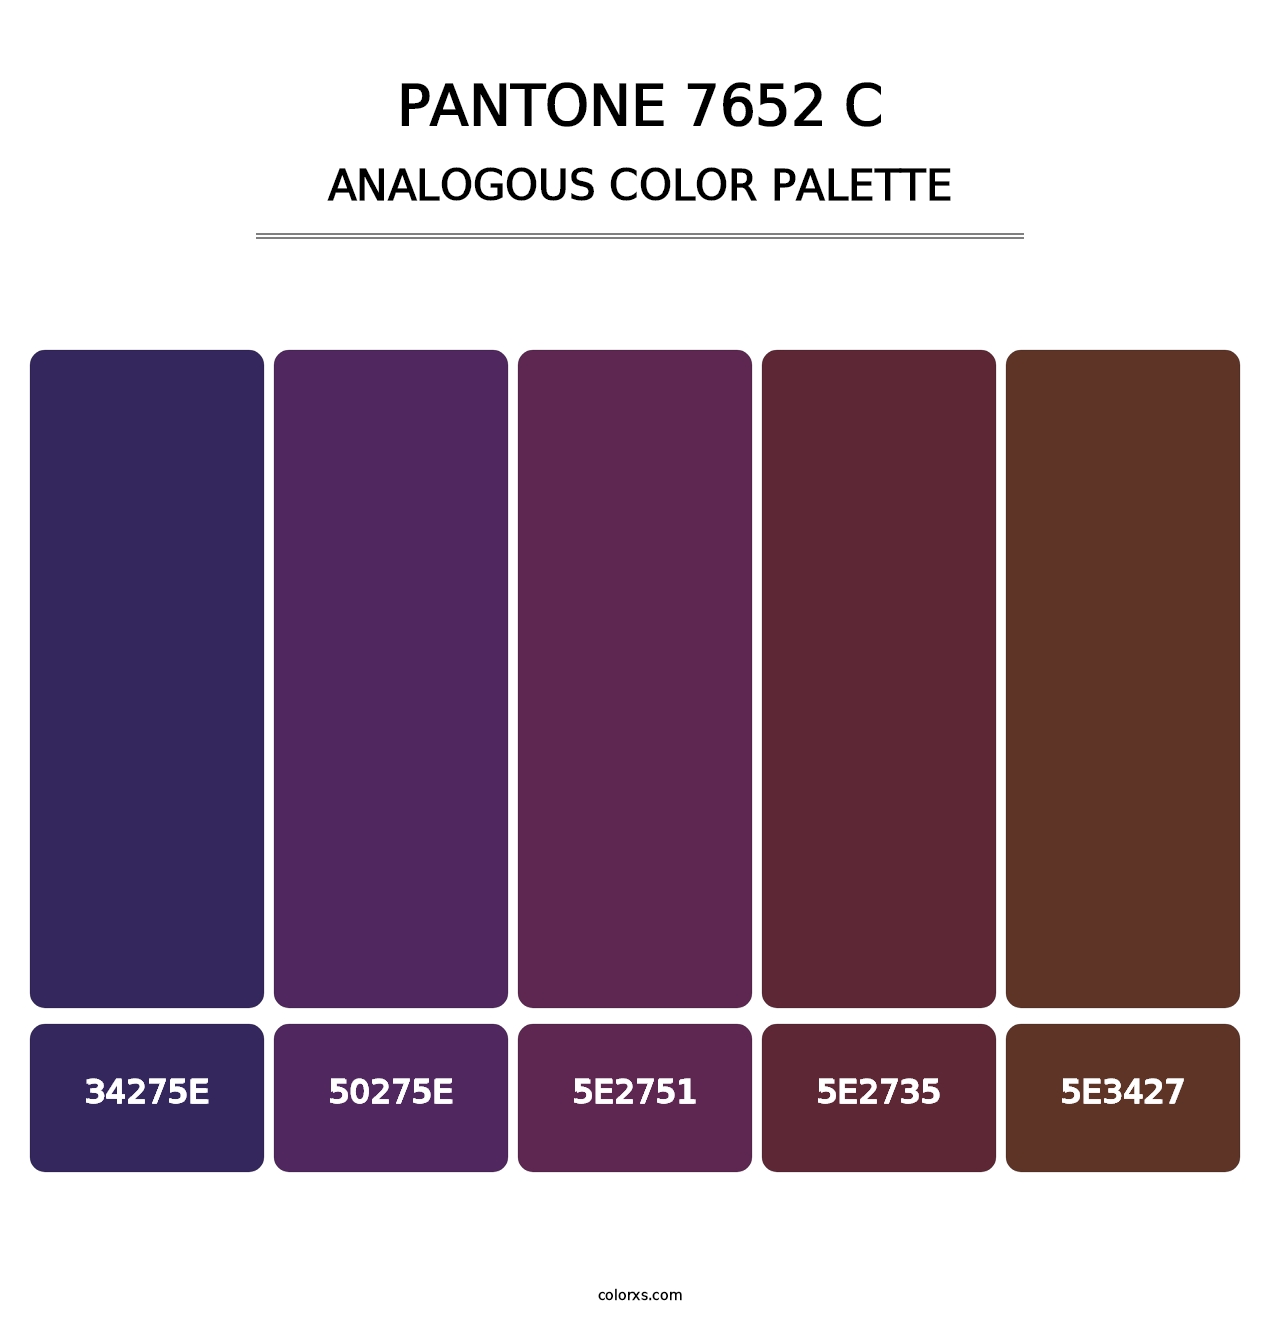 PANTONE 7652 C - Analogous Color Palette